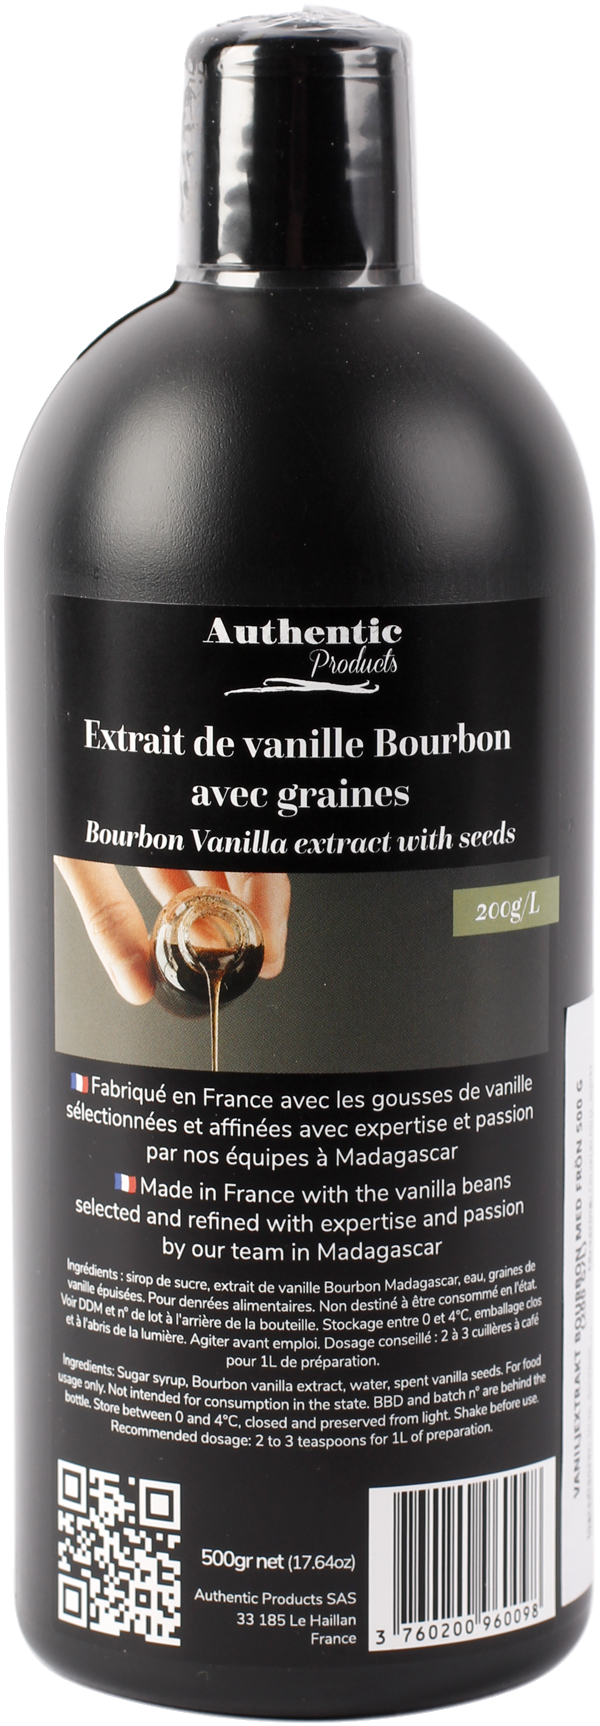 Extrait de vanille Bourbon - 500g